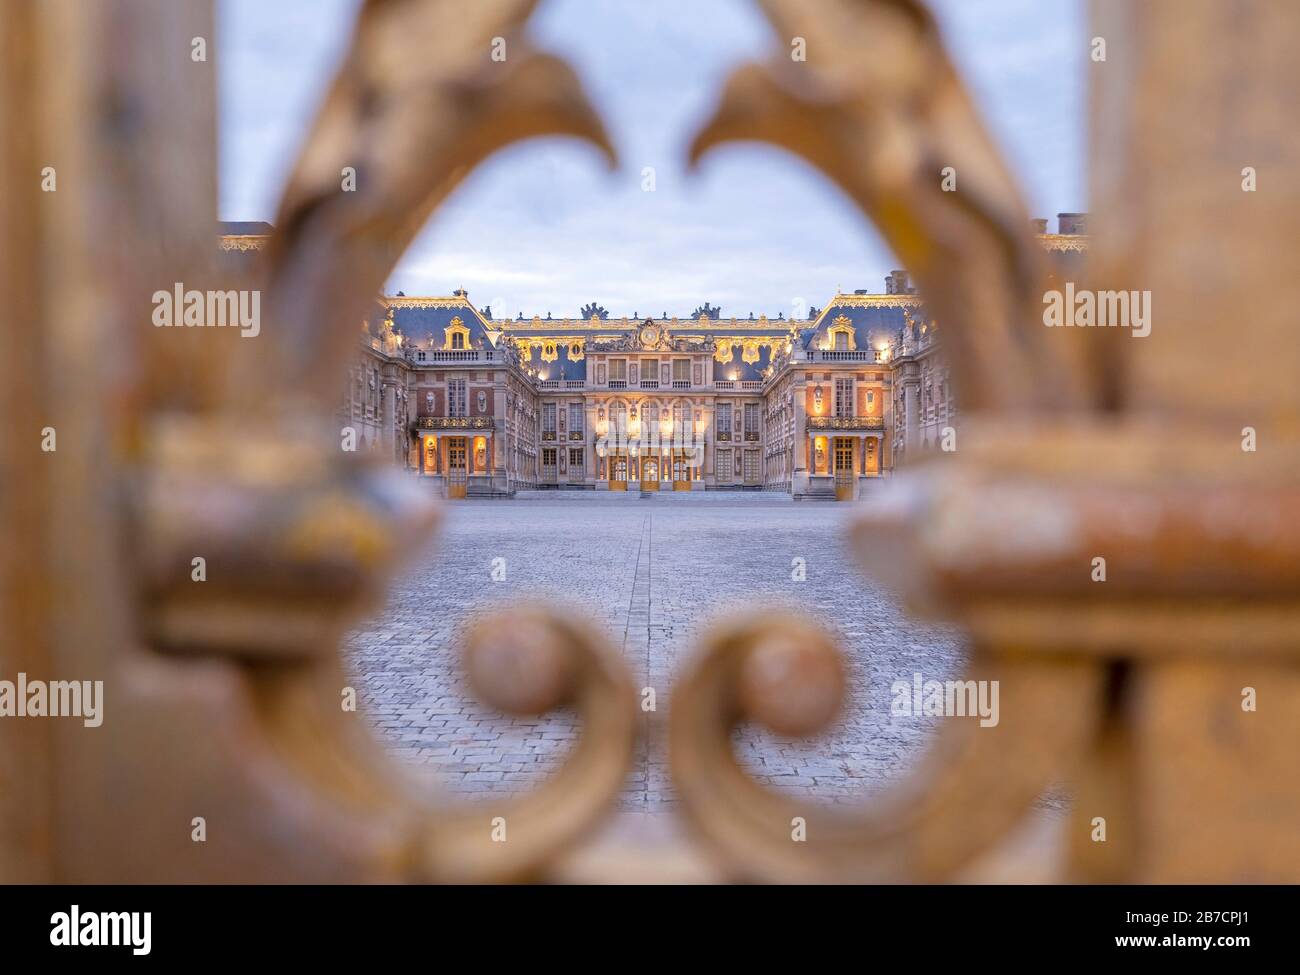 La façade est du château de Versailles vue à travers les bars dorés de la porte d'entrée, France Banque D'Images